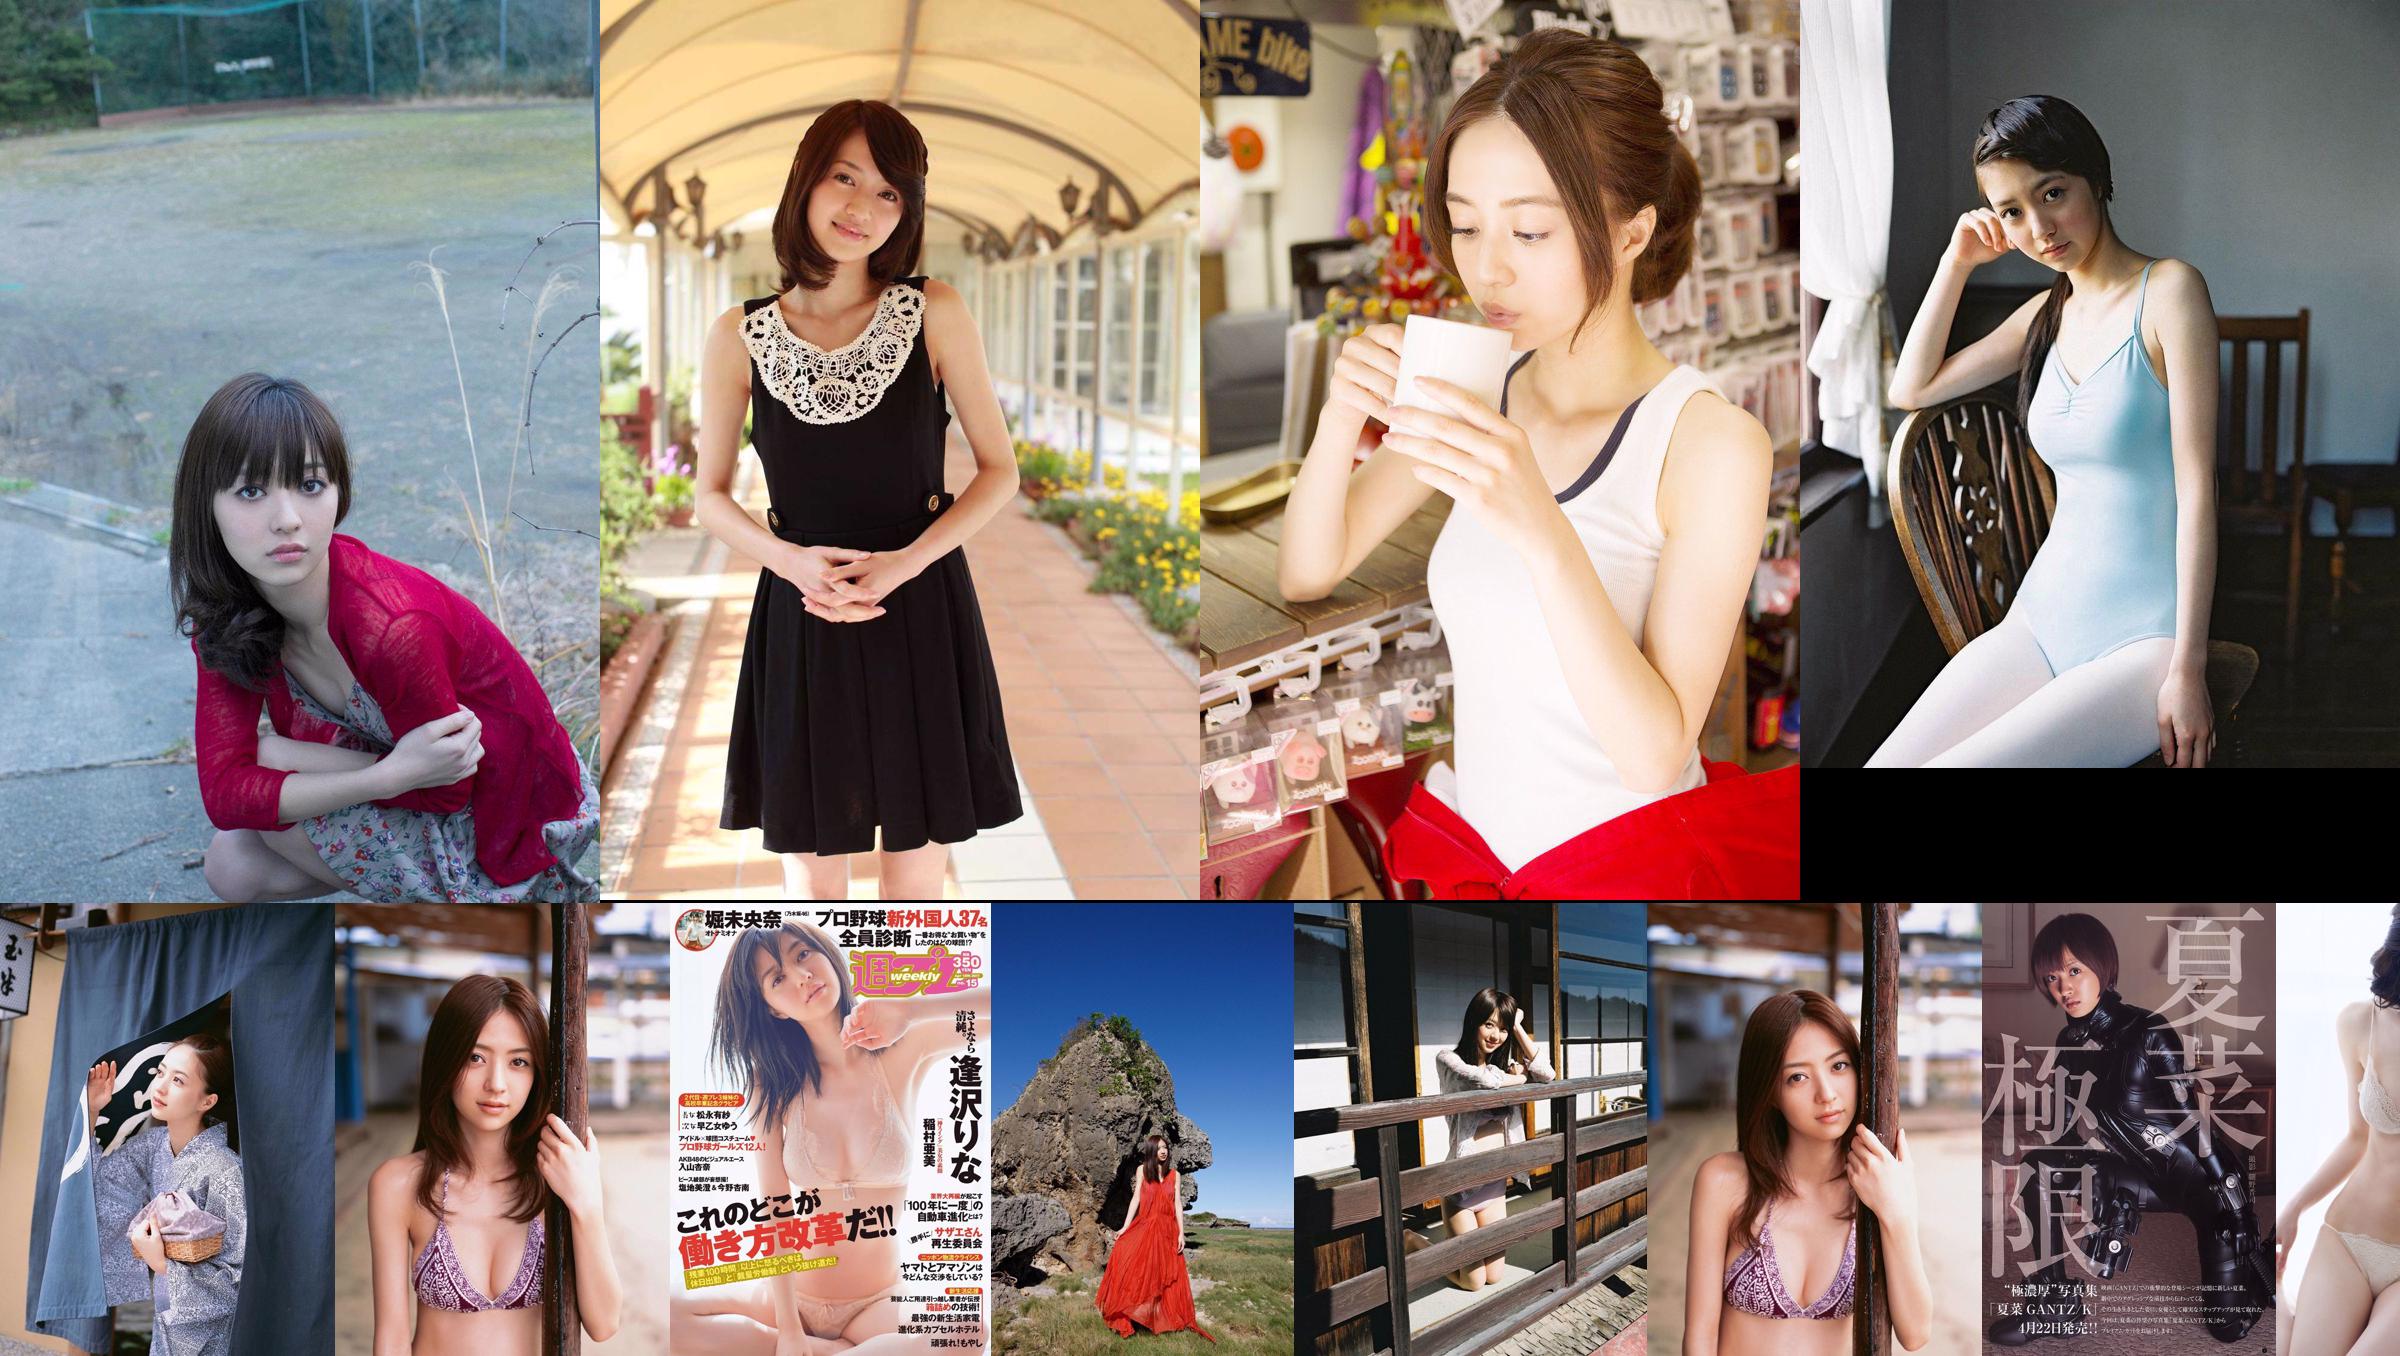 Rina Aizawa Risa Fukatani [Lompat Muda Mingguan] 2012 Majalah Foto No.44 No.7d7792 Halaman 1